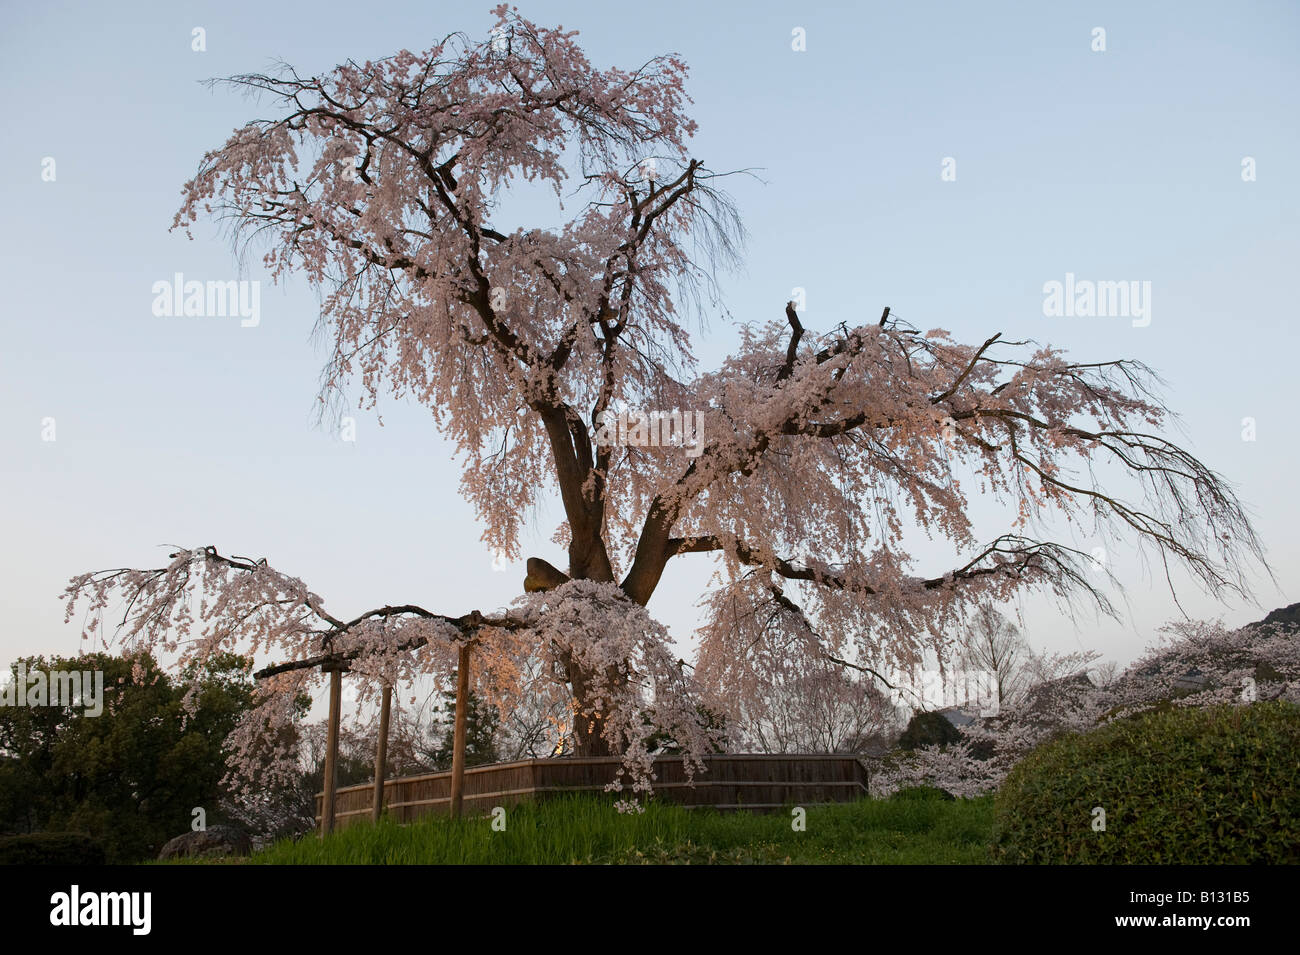 Le Japon, Kyoto, parc Maruyama pendant la saison des cerisiers en fleur au printemps. Un ancien cerisier pleureur (shidaresakura) est courts de chaque soir Banque D'Images